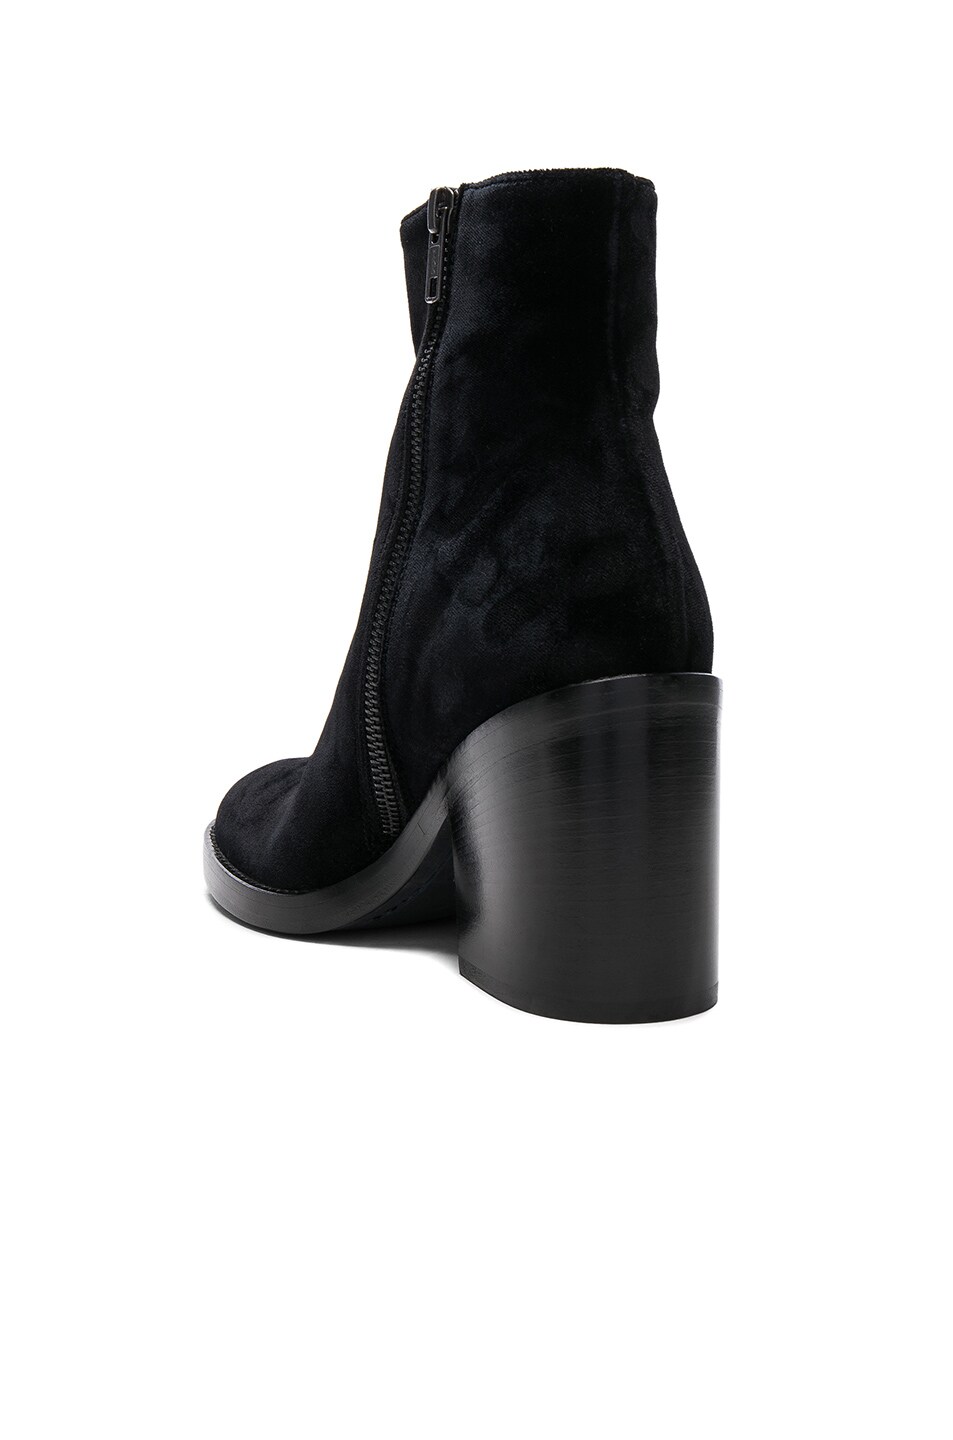 ANN DEMEULEMEESTER Velvet Boots in Black | ModeSens